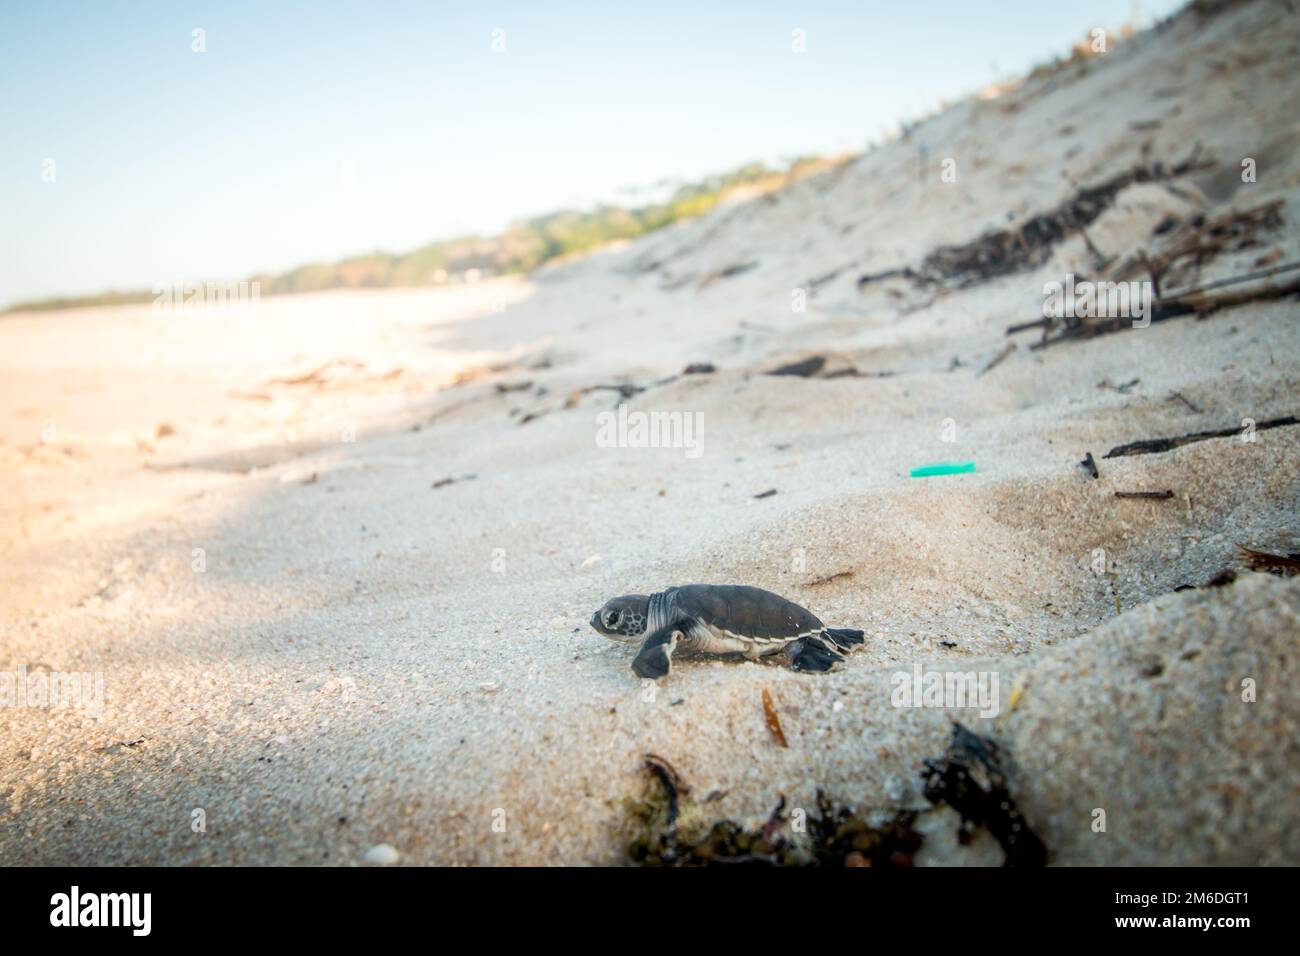 Tortue de mer verte écloserie sur la plage. Banque D'Images